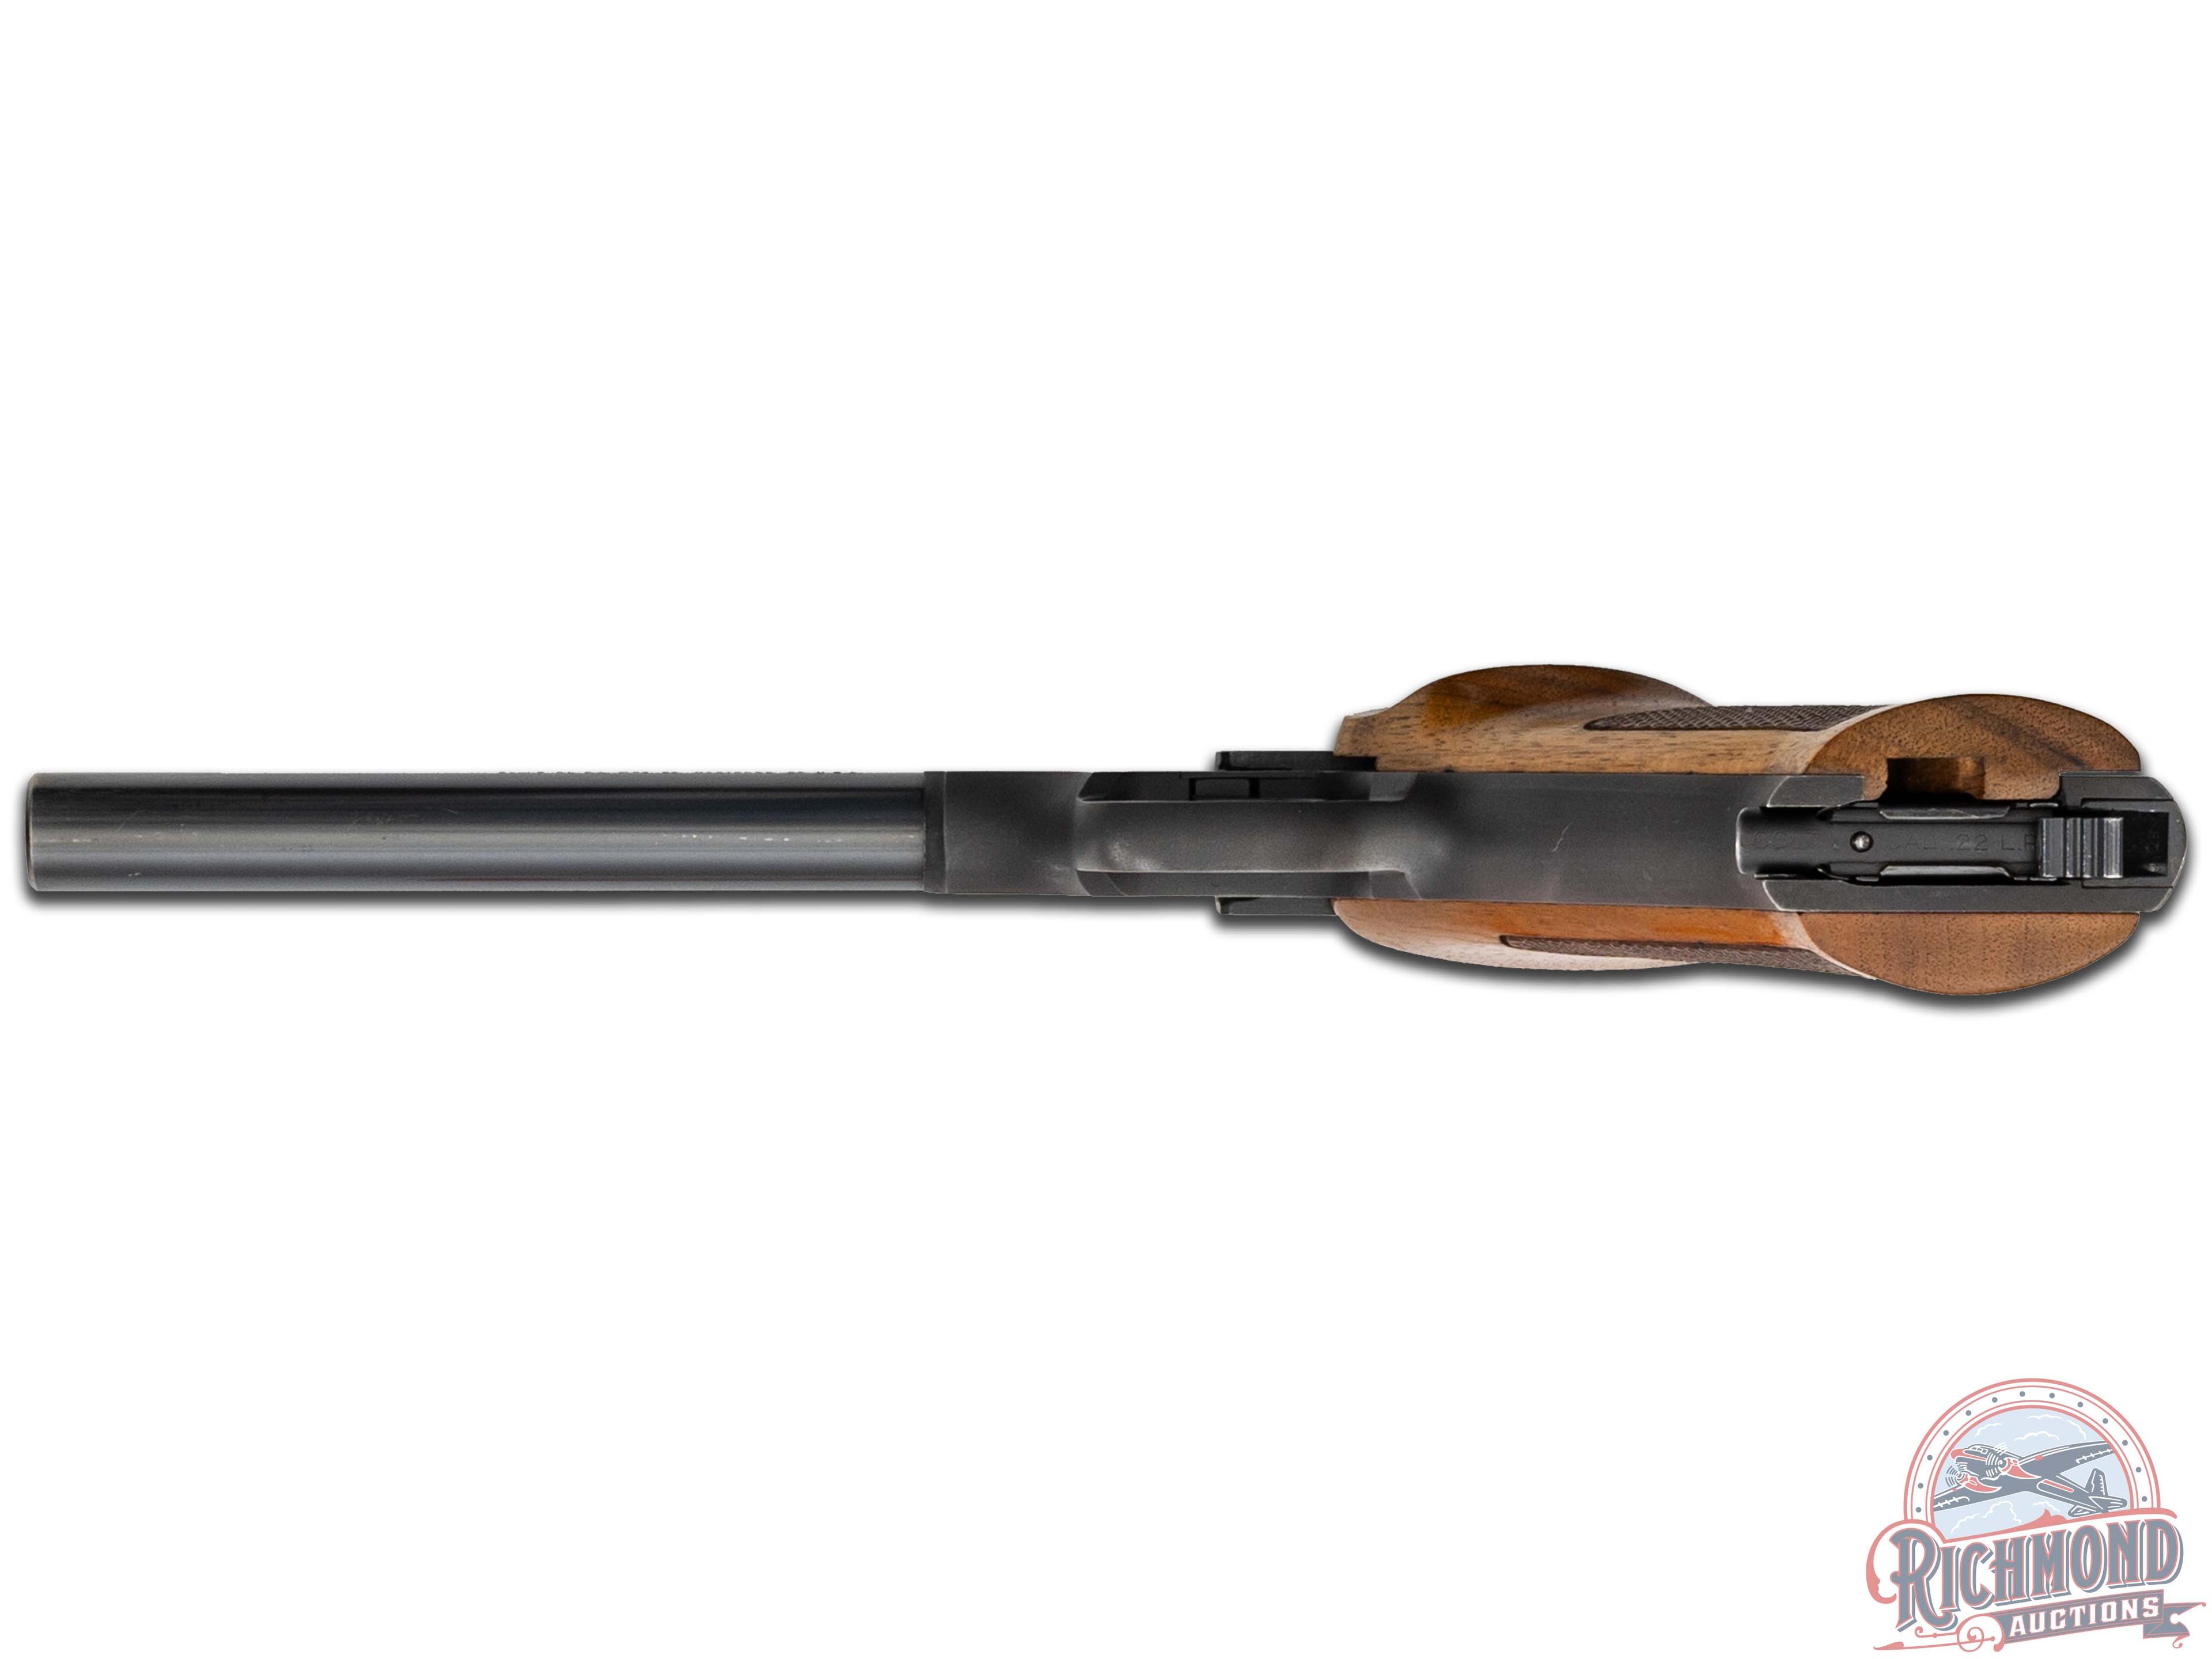 1949 Colt Woodsman Targetsman .22 LR Semi-Automatic Pistol in Original Box